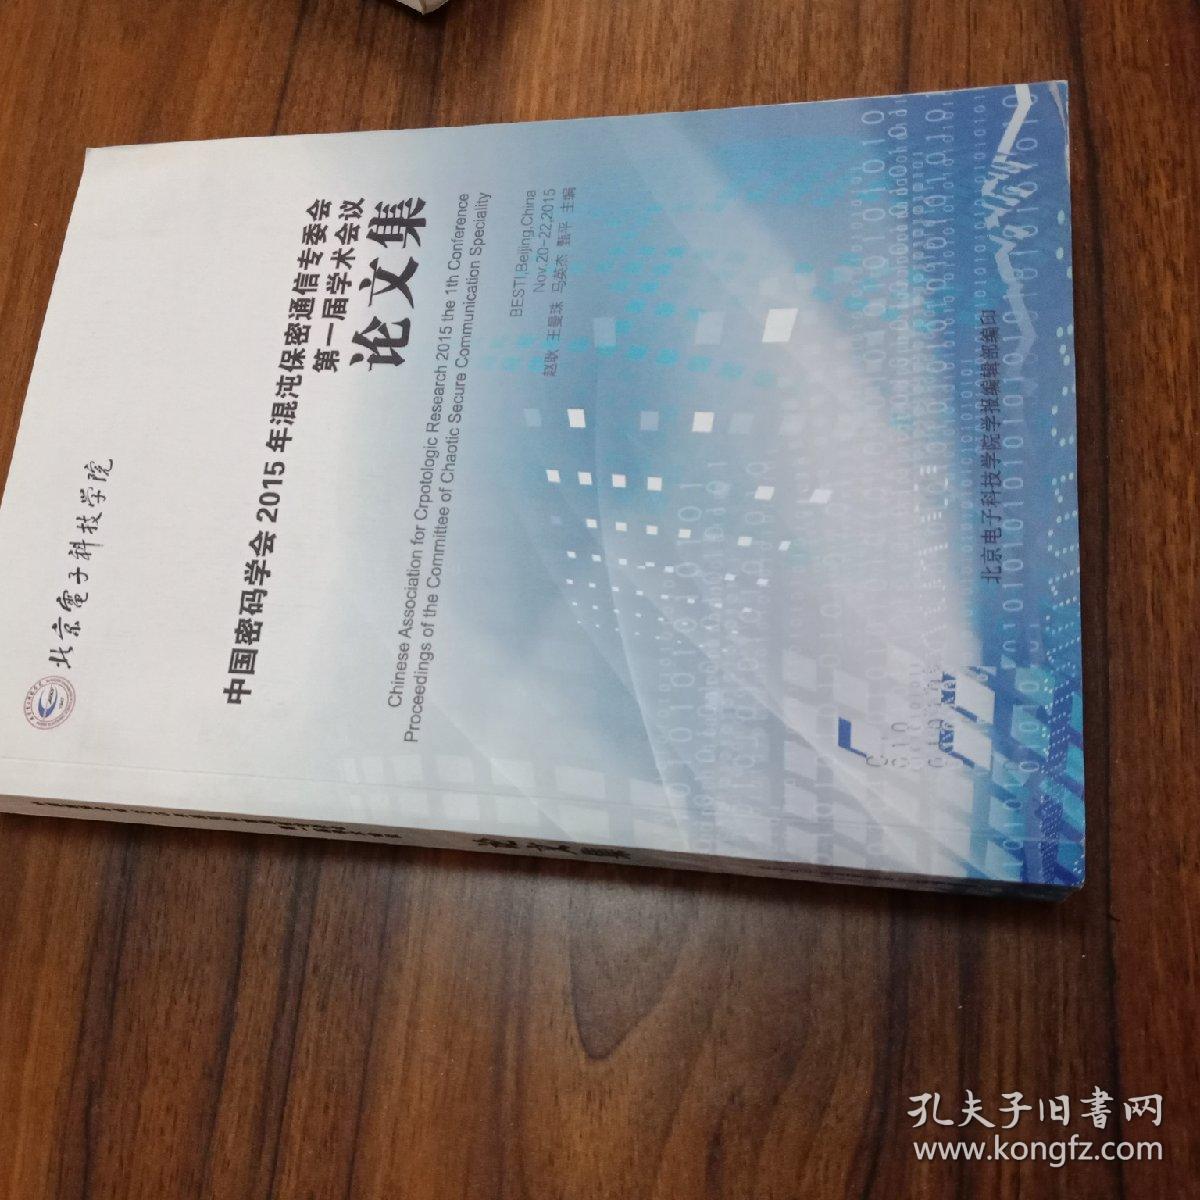 【中英双语】中国密码学会2015年混沌保密通讯专委会第一届学术会议论文集。